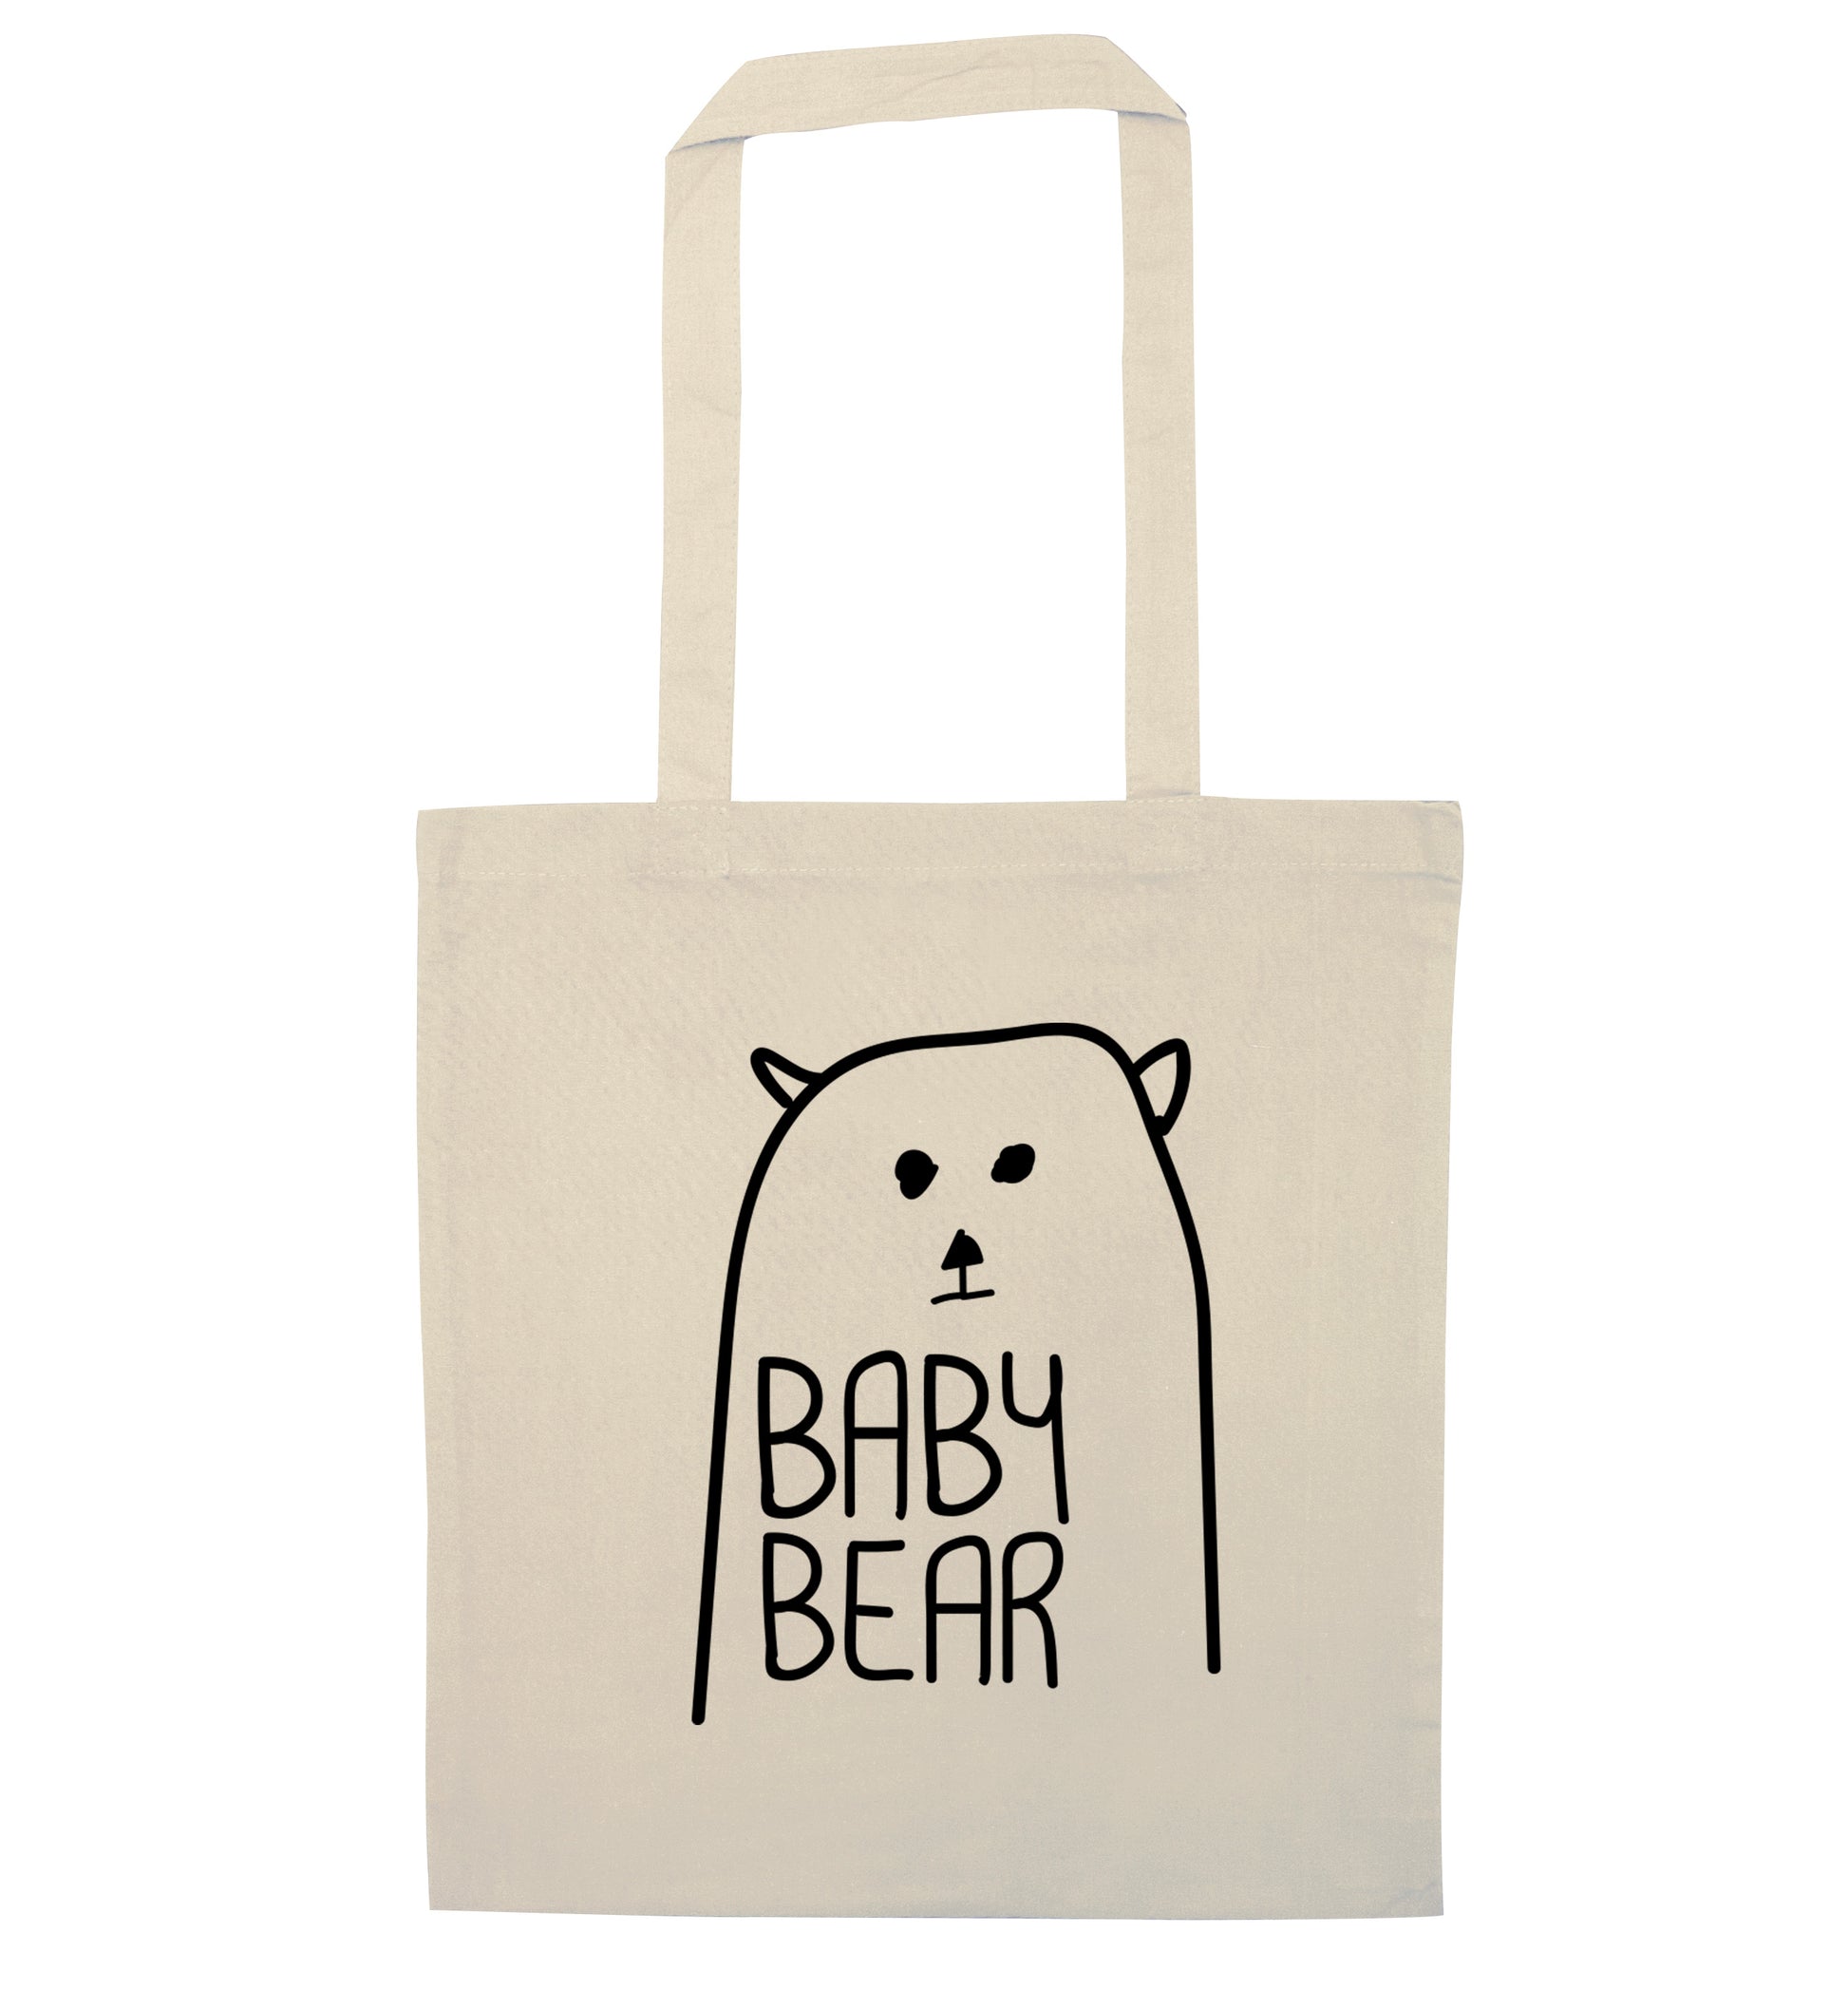 Baby bear natural tote bag